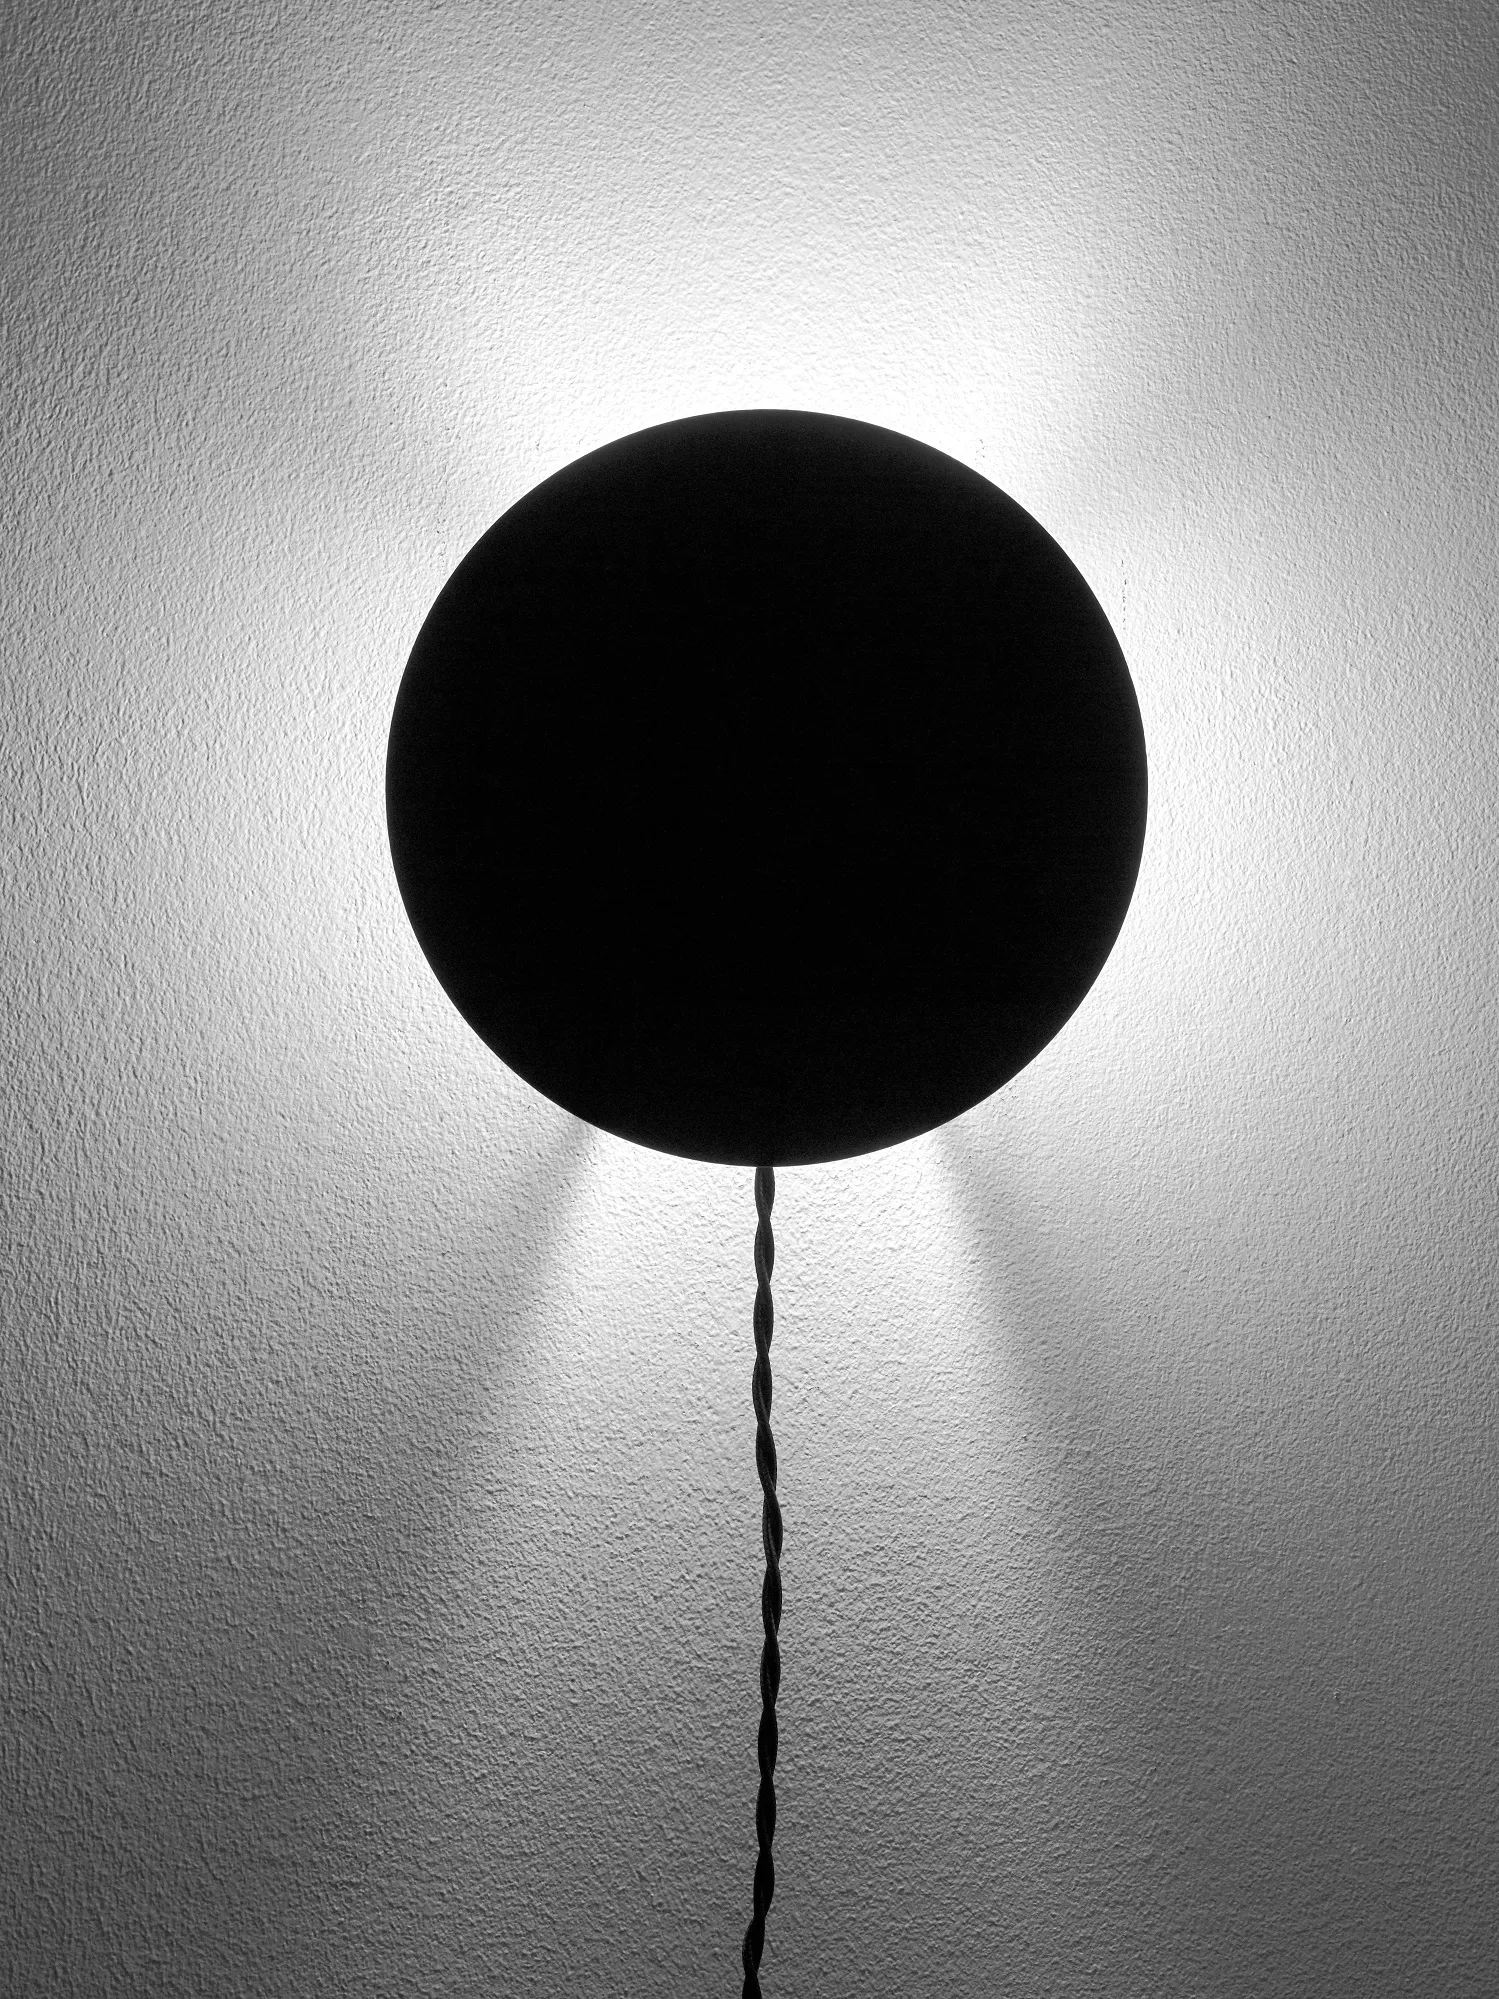 Wall Lamp Black Scudo L 20 W 8 H 20CM Antonino Sciortino by Serax